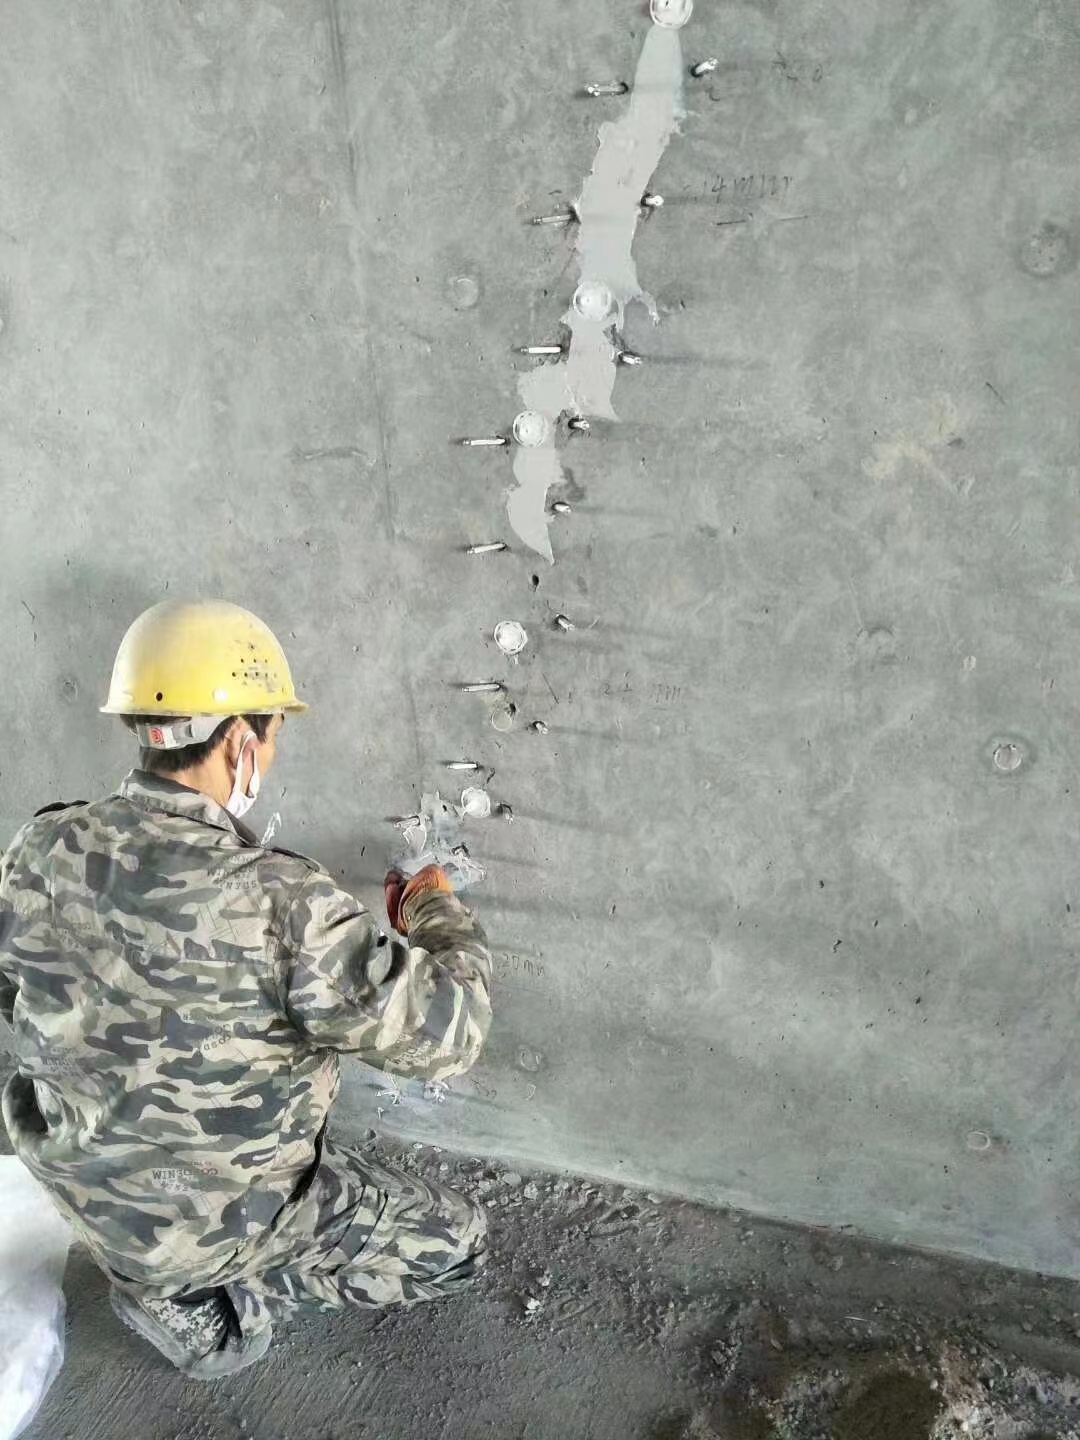 濮阳混凝土楼板裂缝加固施工的方案